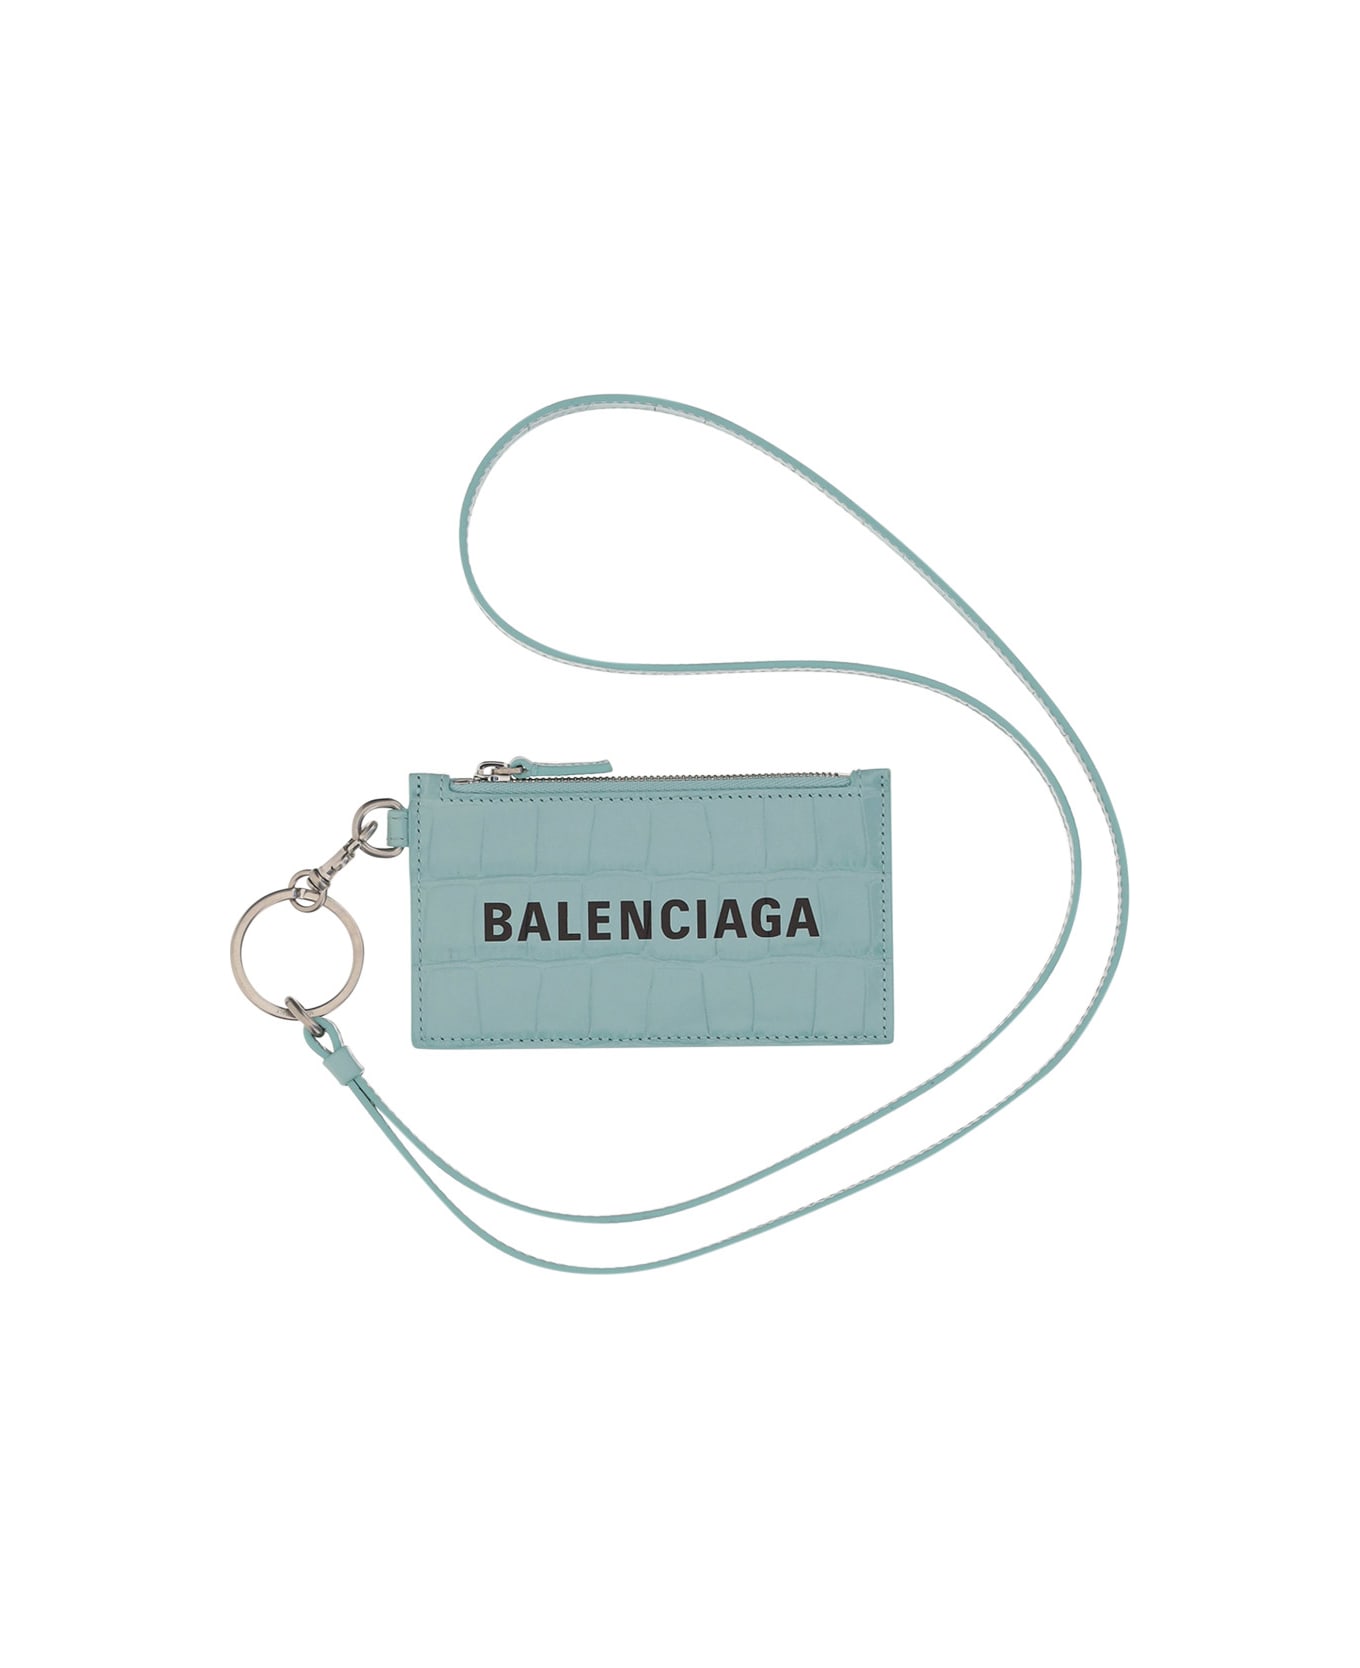 Balenciaga Wallet - Green Aqua/l Black